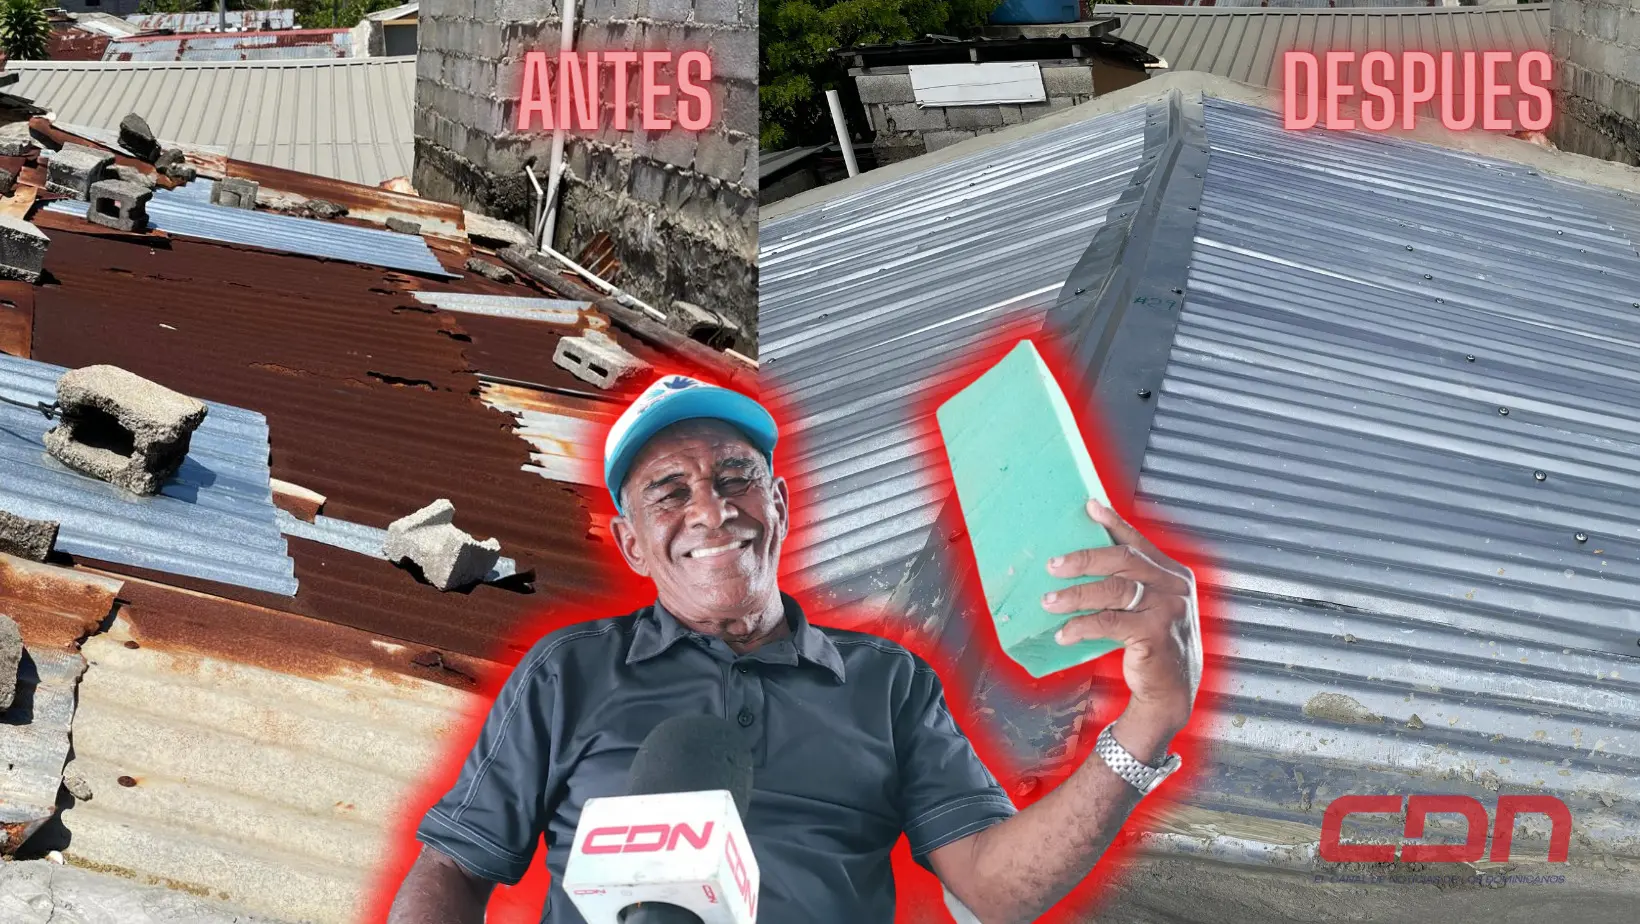 Eladio Martínez, envejeciente que solicitaba ayuda ante deterioro del techo de su casa. Foto CDN Digital